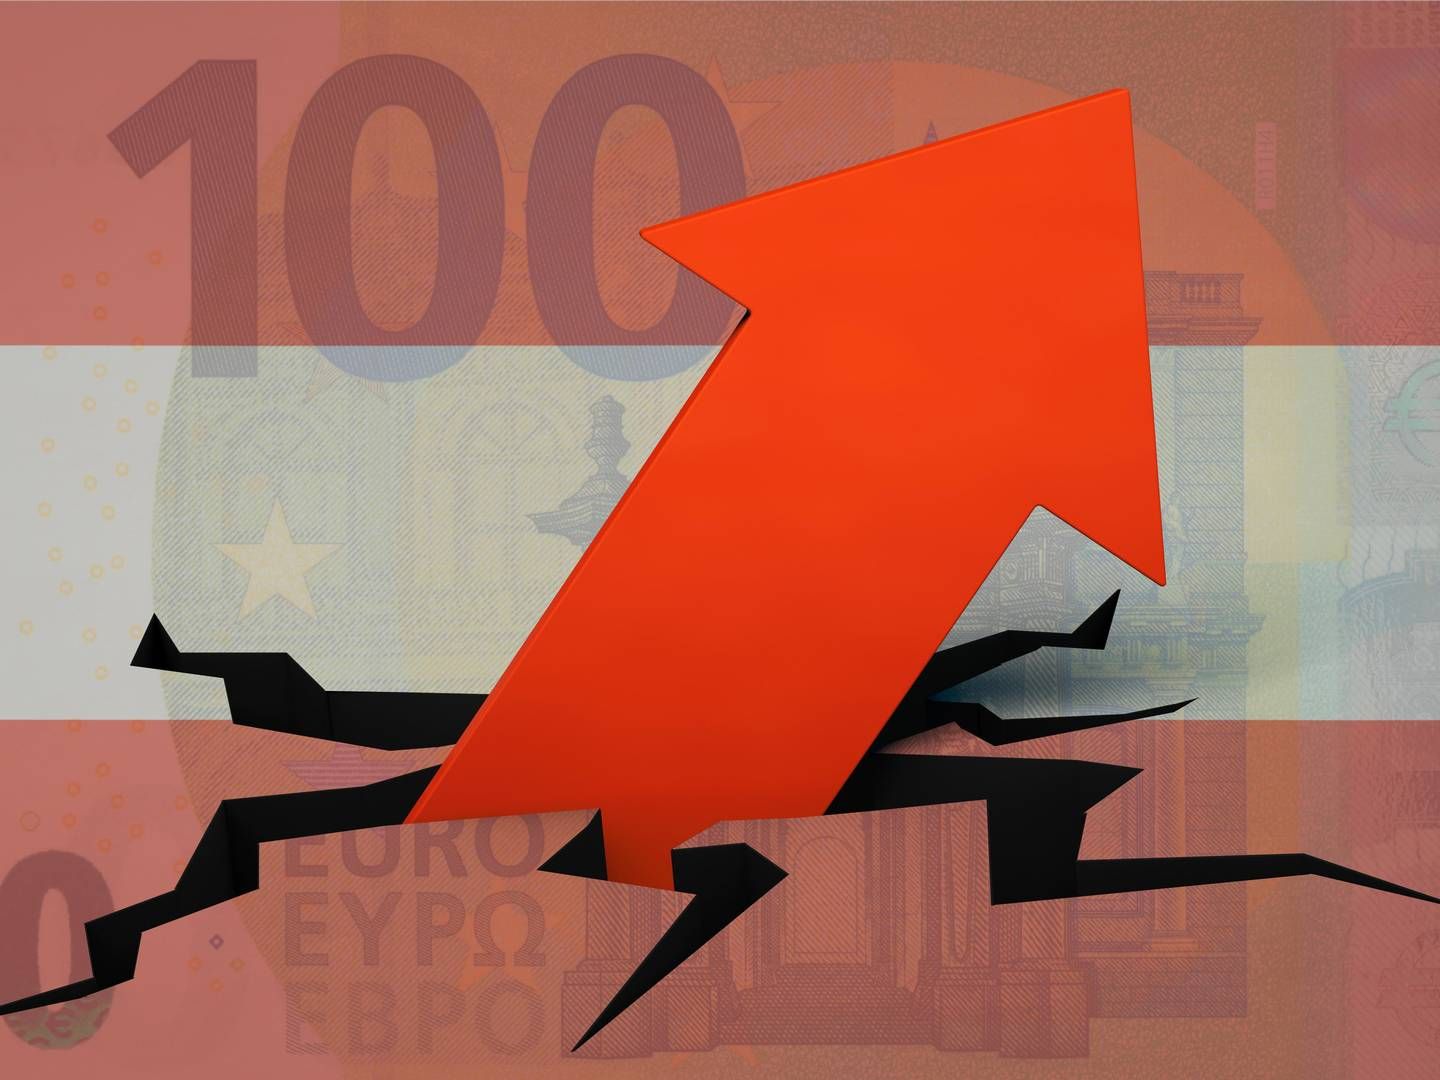 Die Inflation ist im Euroraum immer noch nicht unter Kontrolle. | Foto: picture alliance / Zoonar | DesignIt